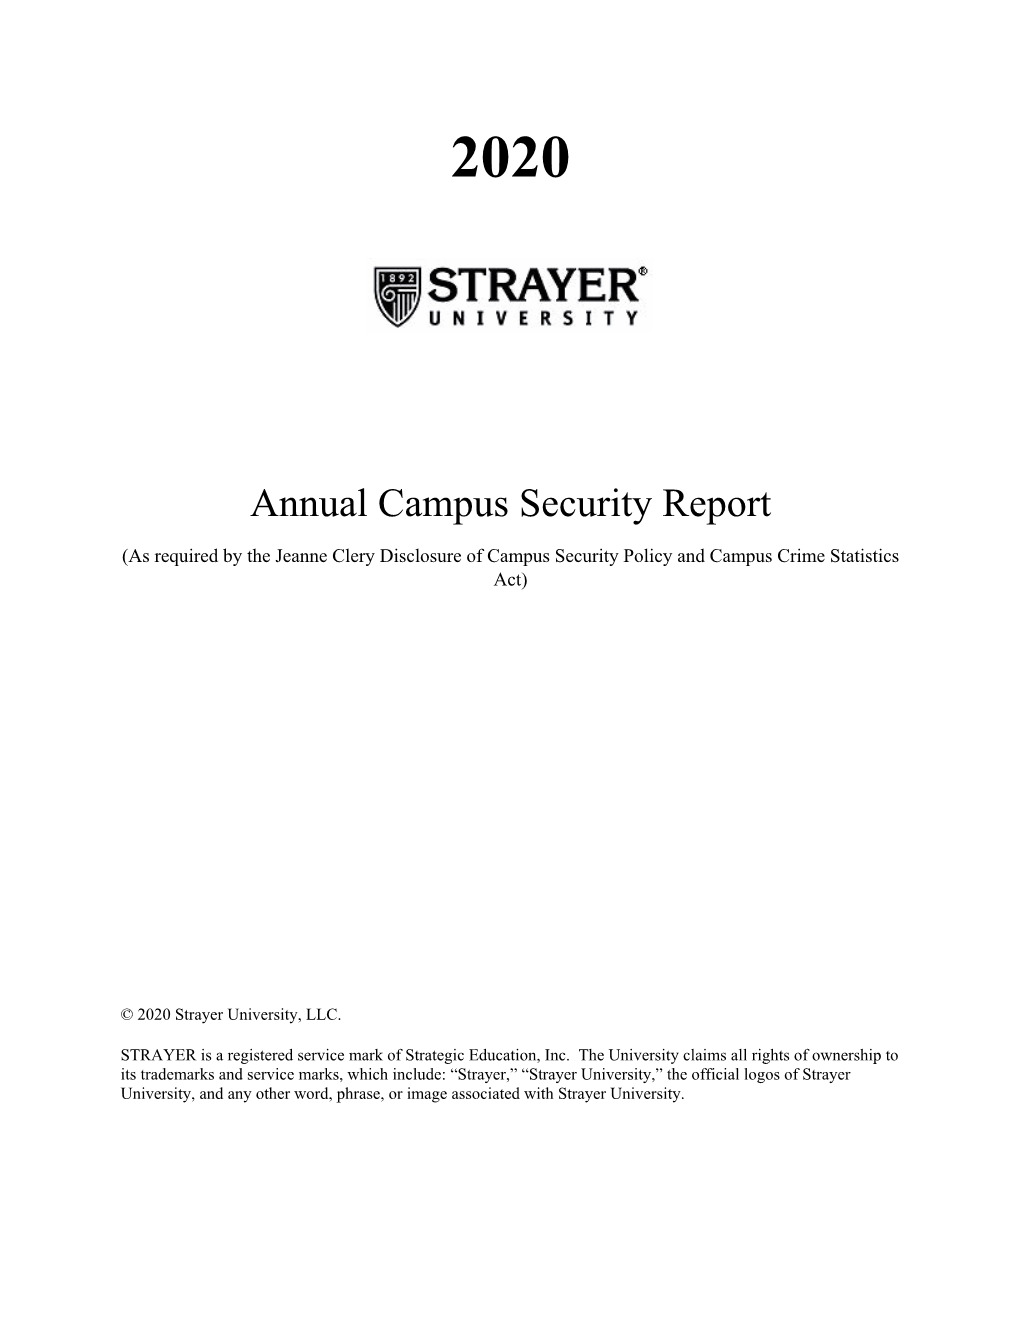 2020 Annual Campus Security Report